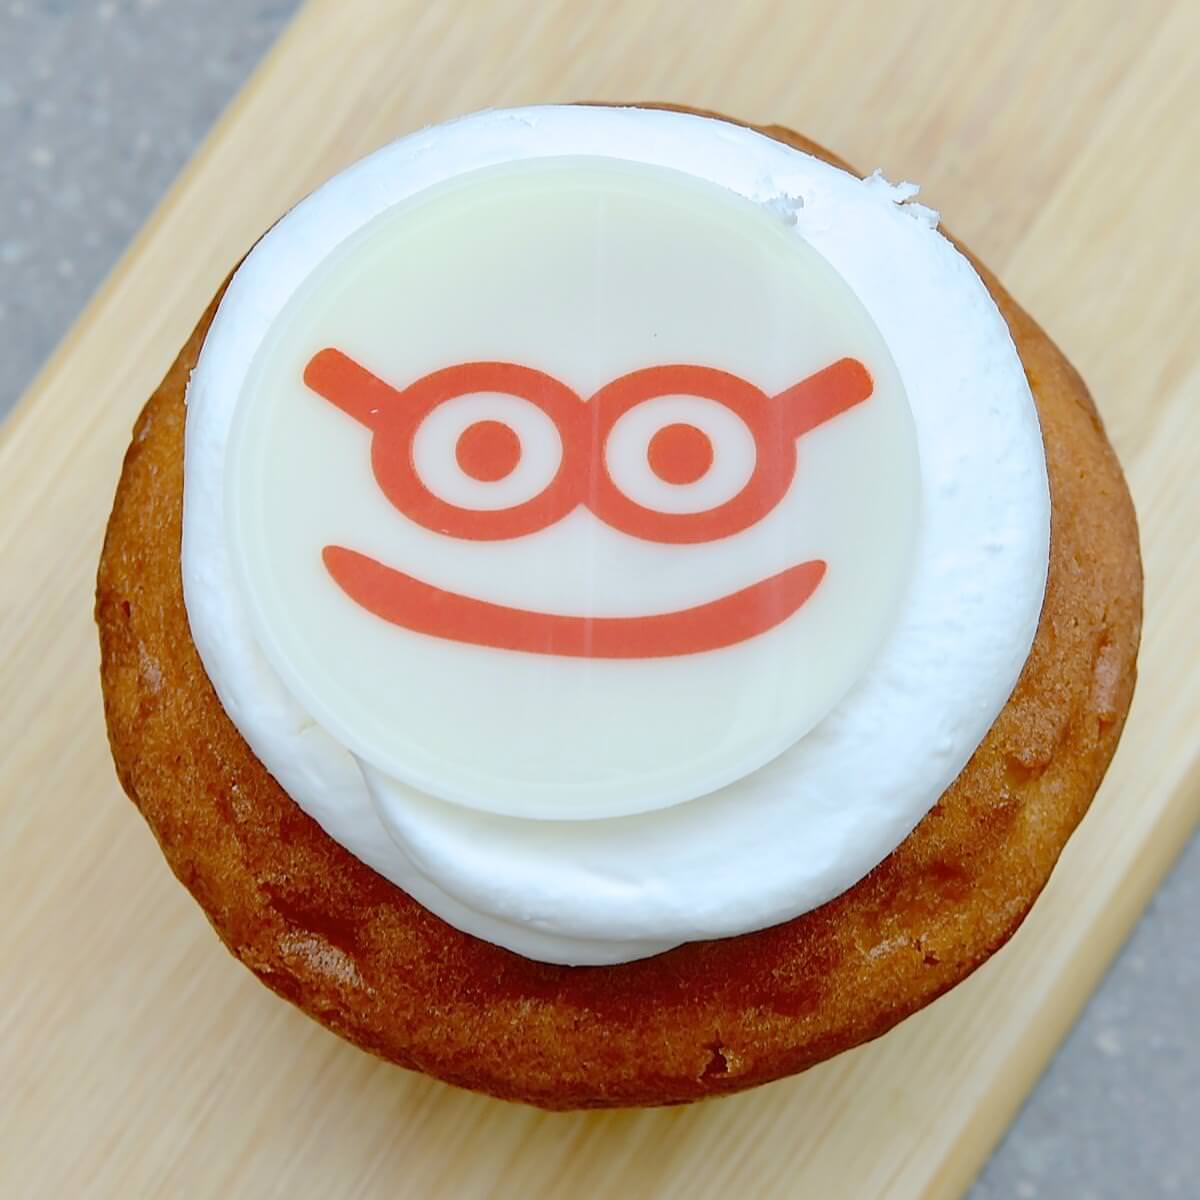 ランドール ボッグスのカップケーキ 東京ディズニーシー ピクサー プレイタイム18 デザート